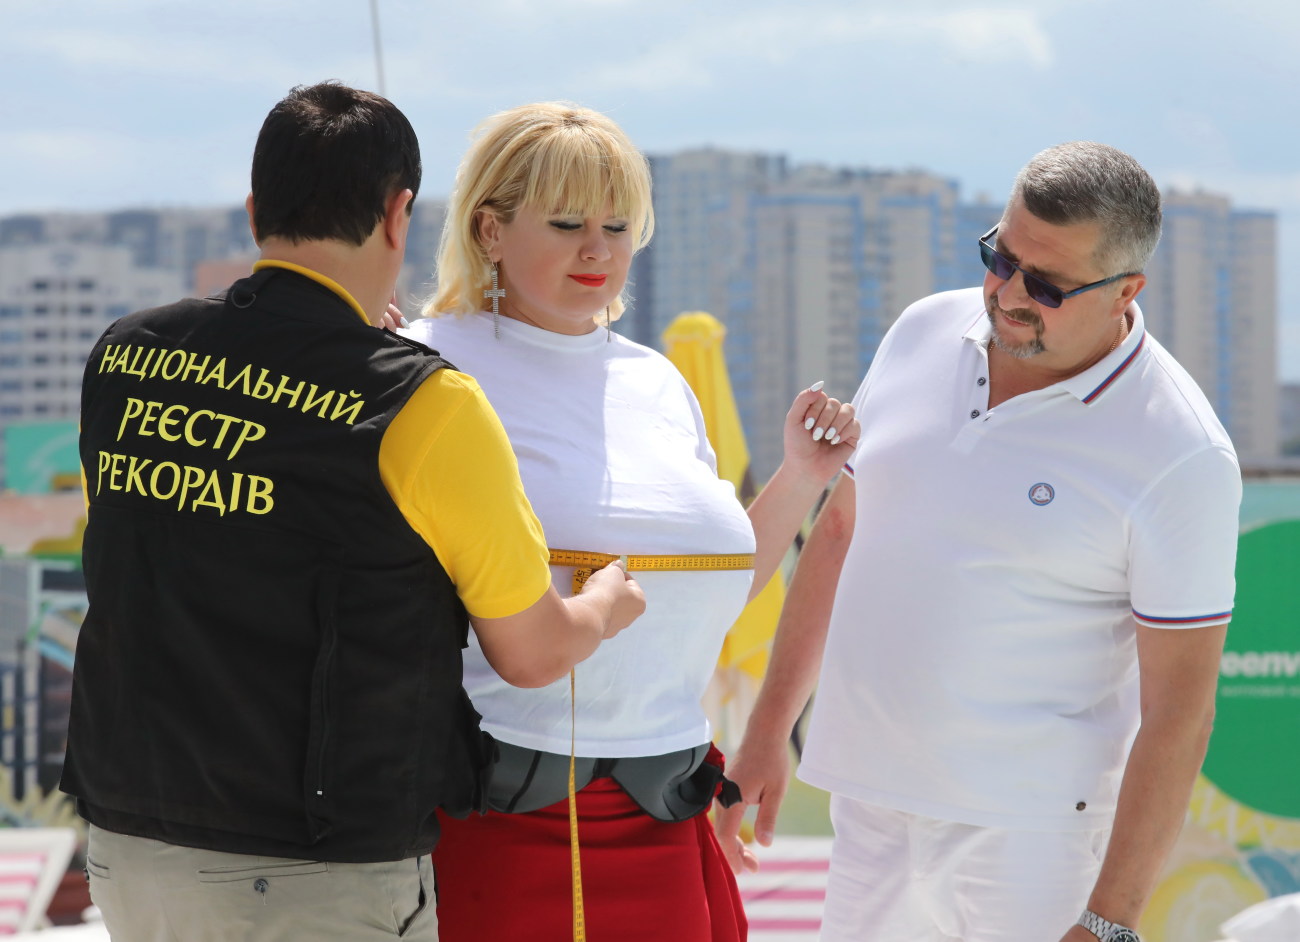 13-й размер и все натурально: В Украине новая обладательница титула &#171;Самая большая женская грудь&#187;